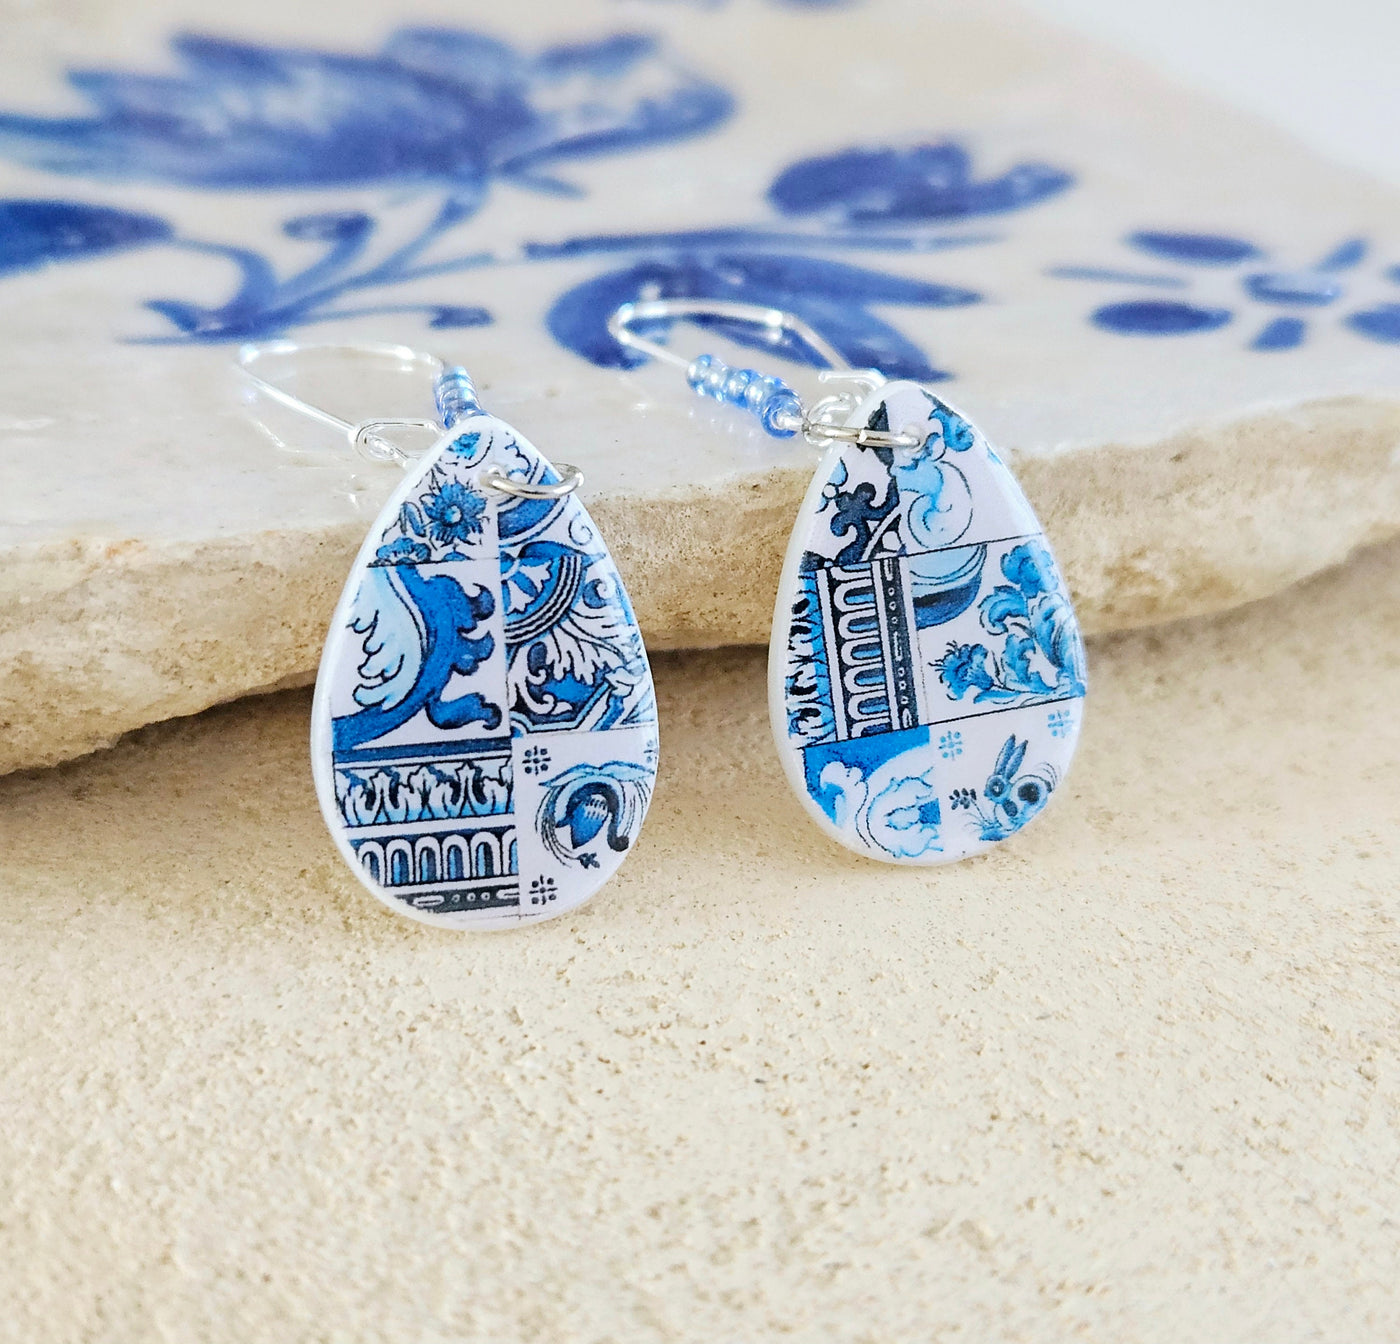 Portugal Teardrop Tile Earring Portuguese Jewelry Azulejo Earring Tile Teardrop Travel Gift Souvenir Mother Pearl Blue Mixed Tile Earring